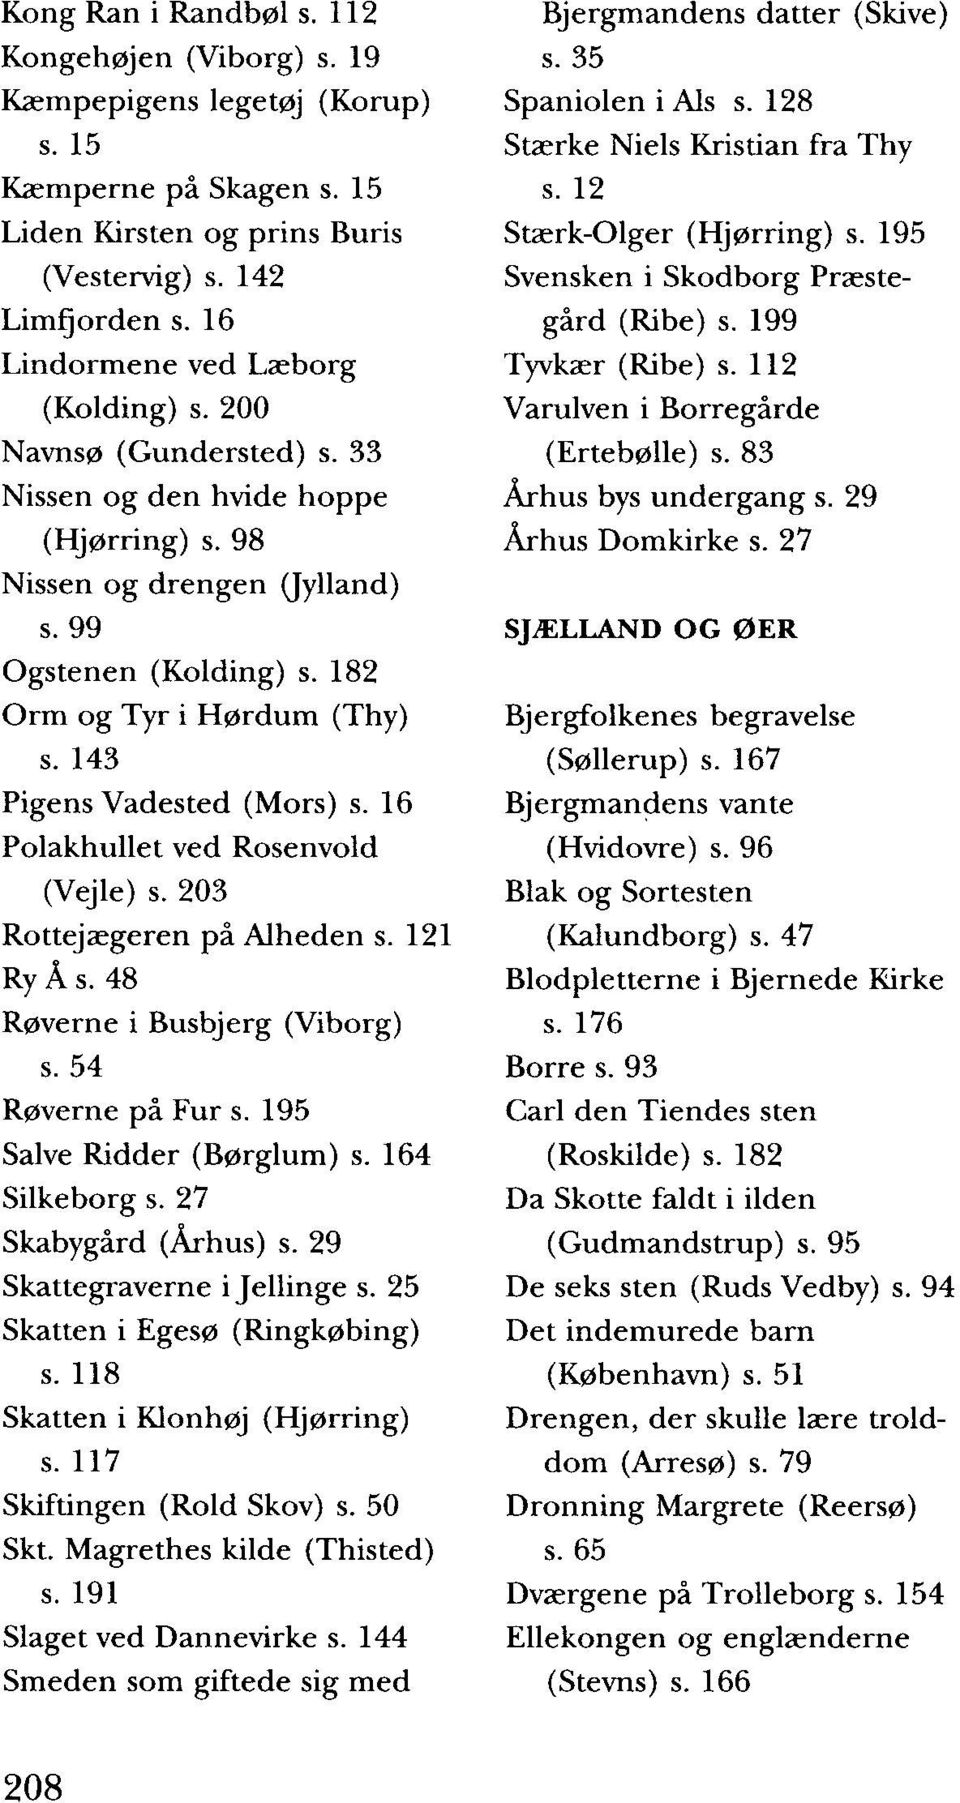 143 Pigens Vadested (Mors) s. 16 Polakhullet ved Rosenvold (Vejle) s. 203 Rottejægeren på Alheden s. 121 Ry Å s. 48 Røverne i Busbjerg (Viborg) s. 54 Røverne på Fur s. 195 Salve Ridder (Børglum) s.